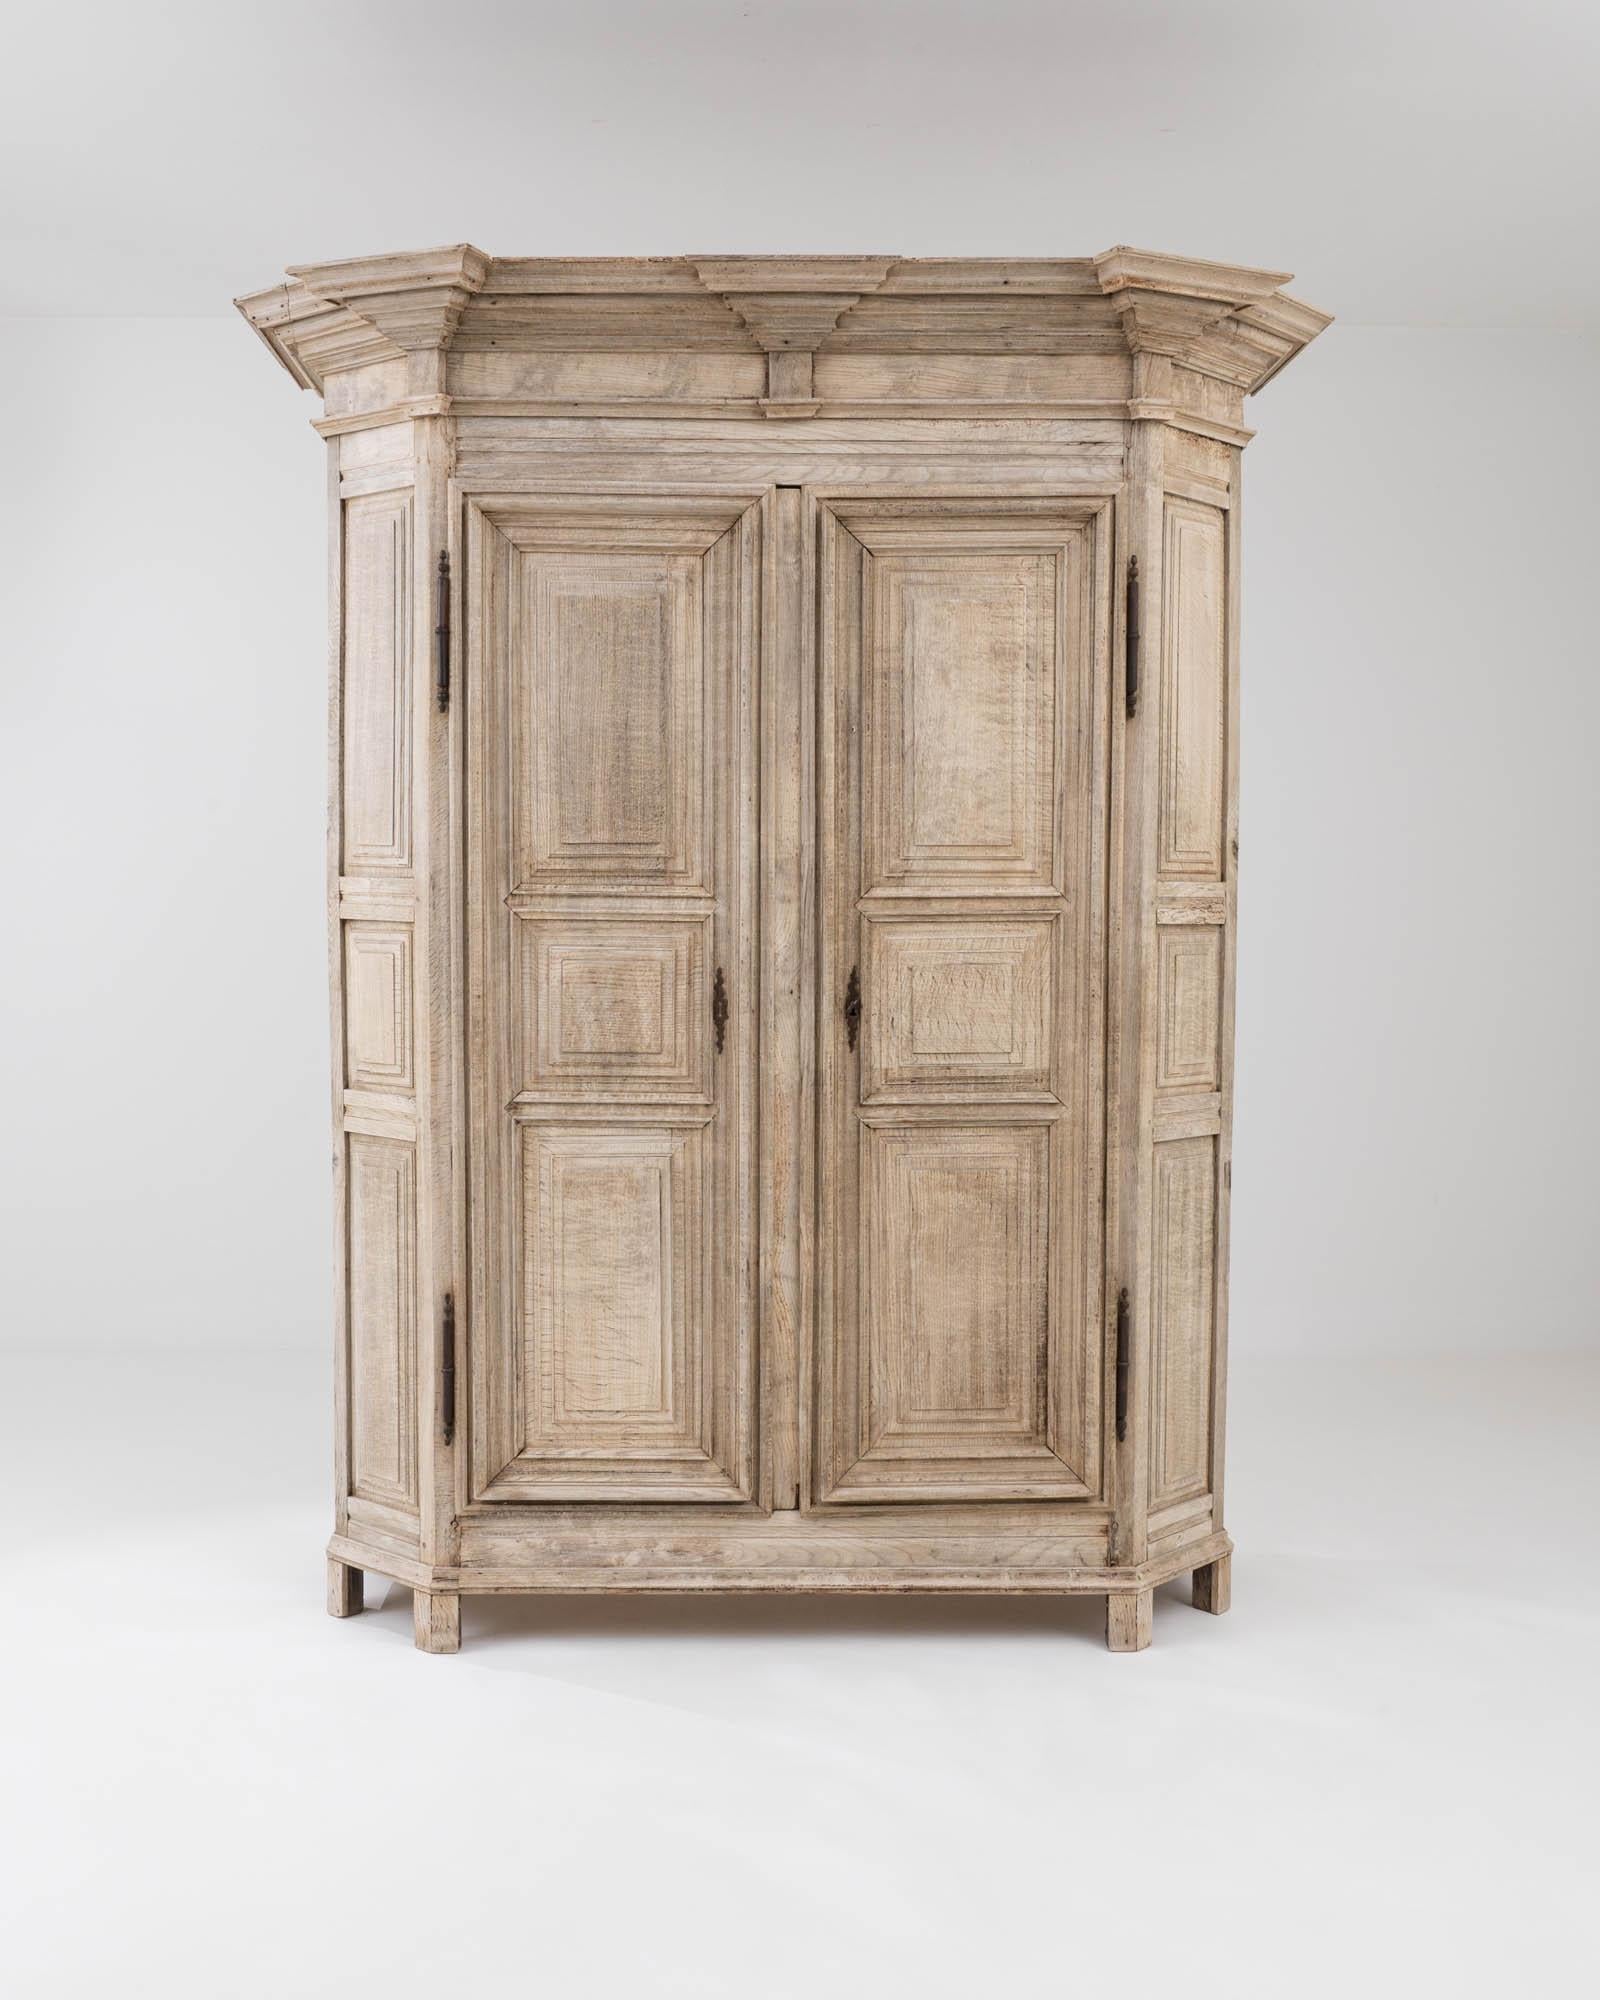 Élégante, attrayante et magnifiquement fabriquée, cette armoire en chêne ancien est un véritable enchantement. Fabriqué en Belgique au début du XIXe siècle, ce modèle allie une silhouette spectaculaire à de délicats détails sculptés. Une